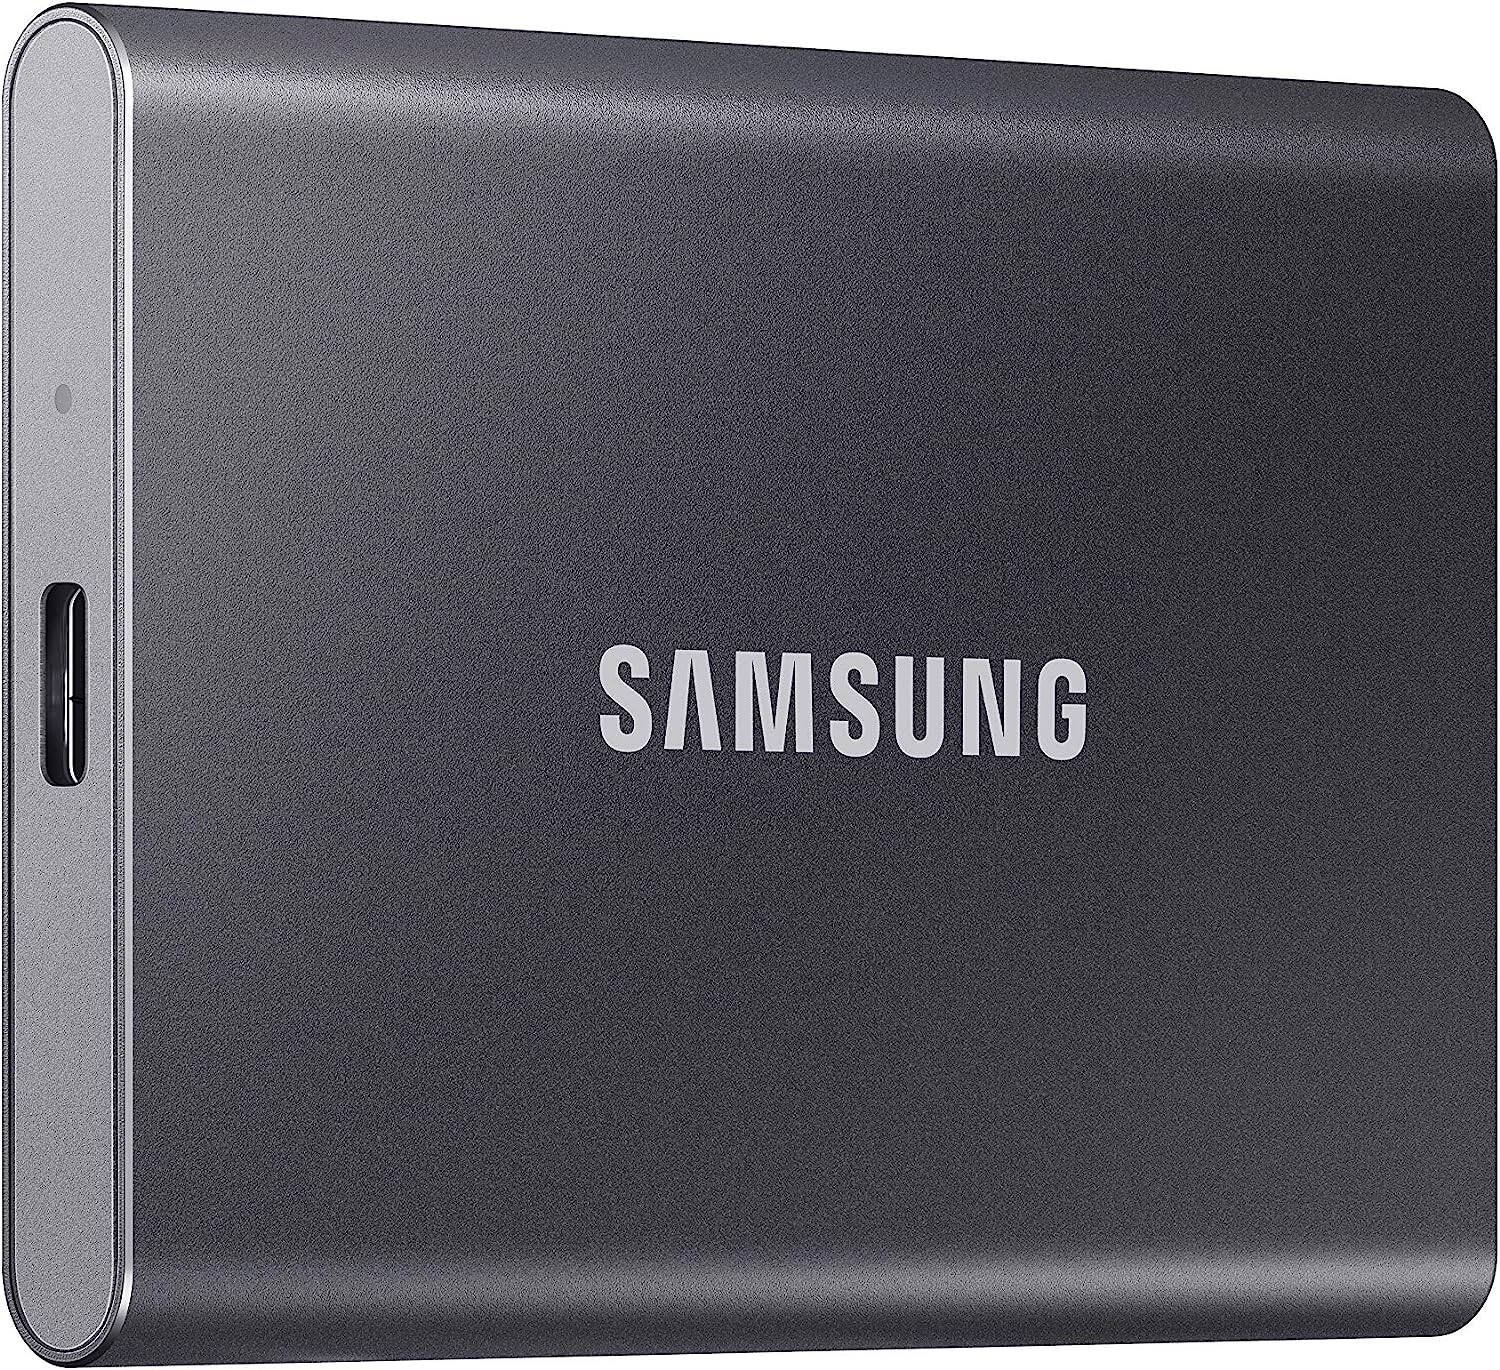 历史低价！Samsung 三星SSD T7 移动固态硬盘特卖+包邮！1TB/2TB 容量可